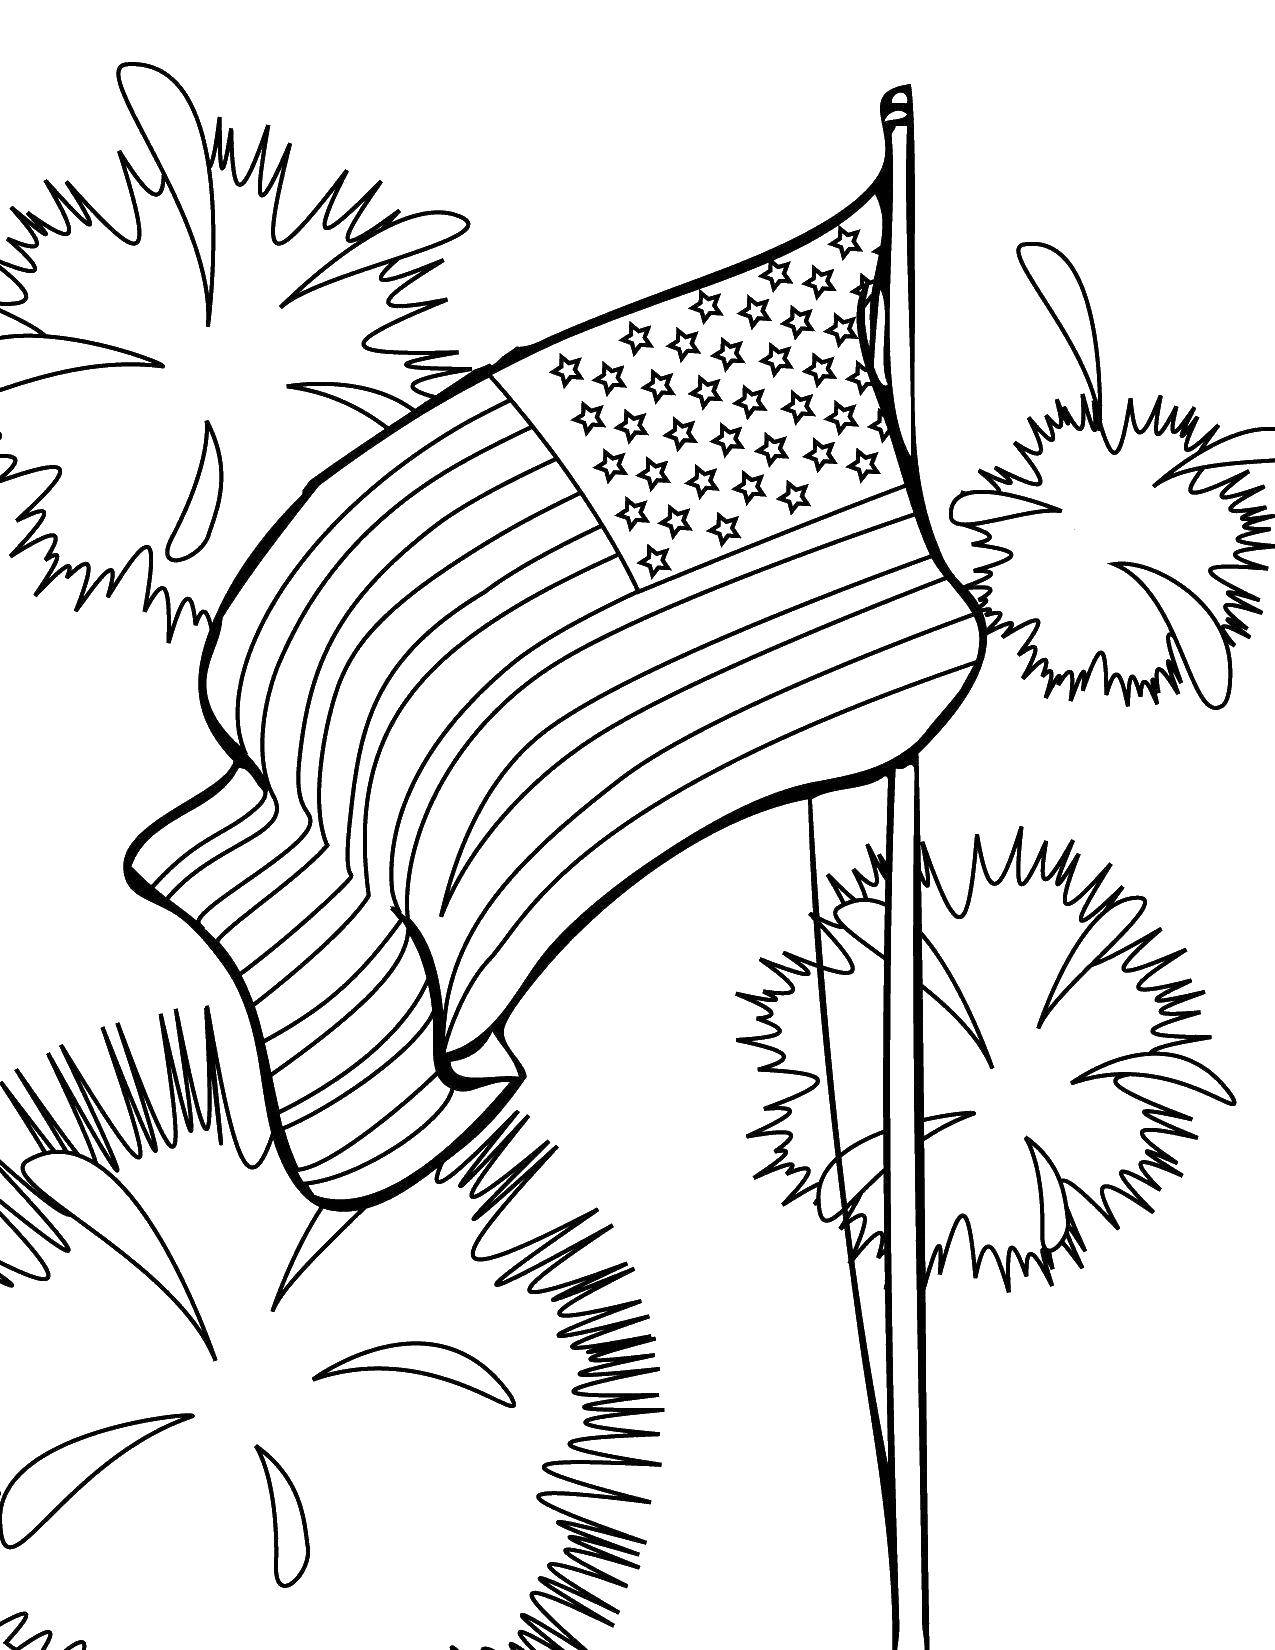 Coloring USA flag. Category USA . Tags:  America, USA, flag.